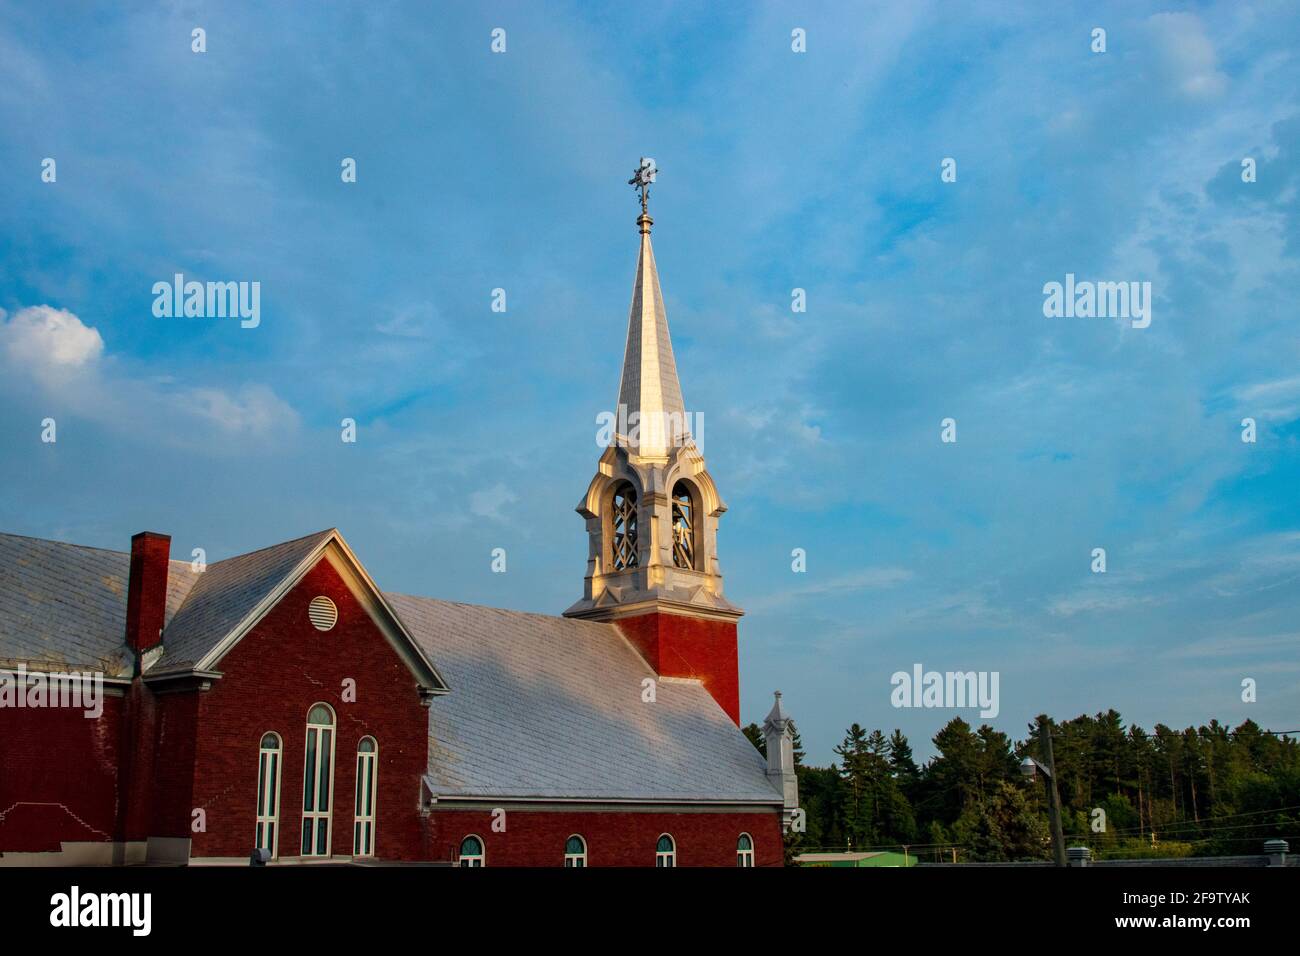 Église de campagne en brique rouge avec un clocher argenté sous un ciel bleu vif Banque D'Images